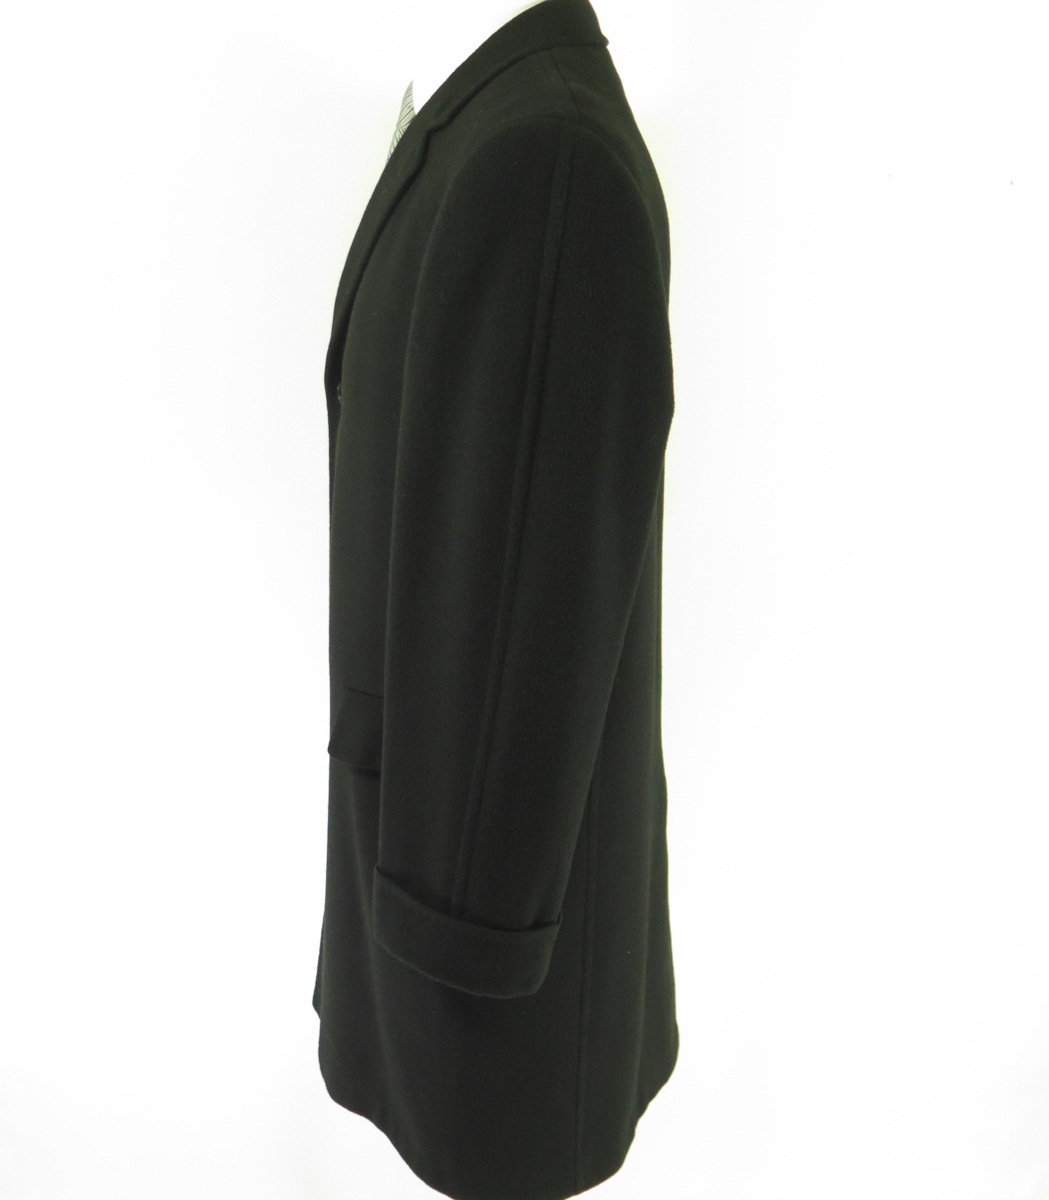 Vintage 60s Black 100% Cashmere Overcoat Coat 42 or Large Black Soft ...